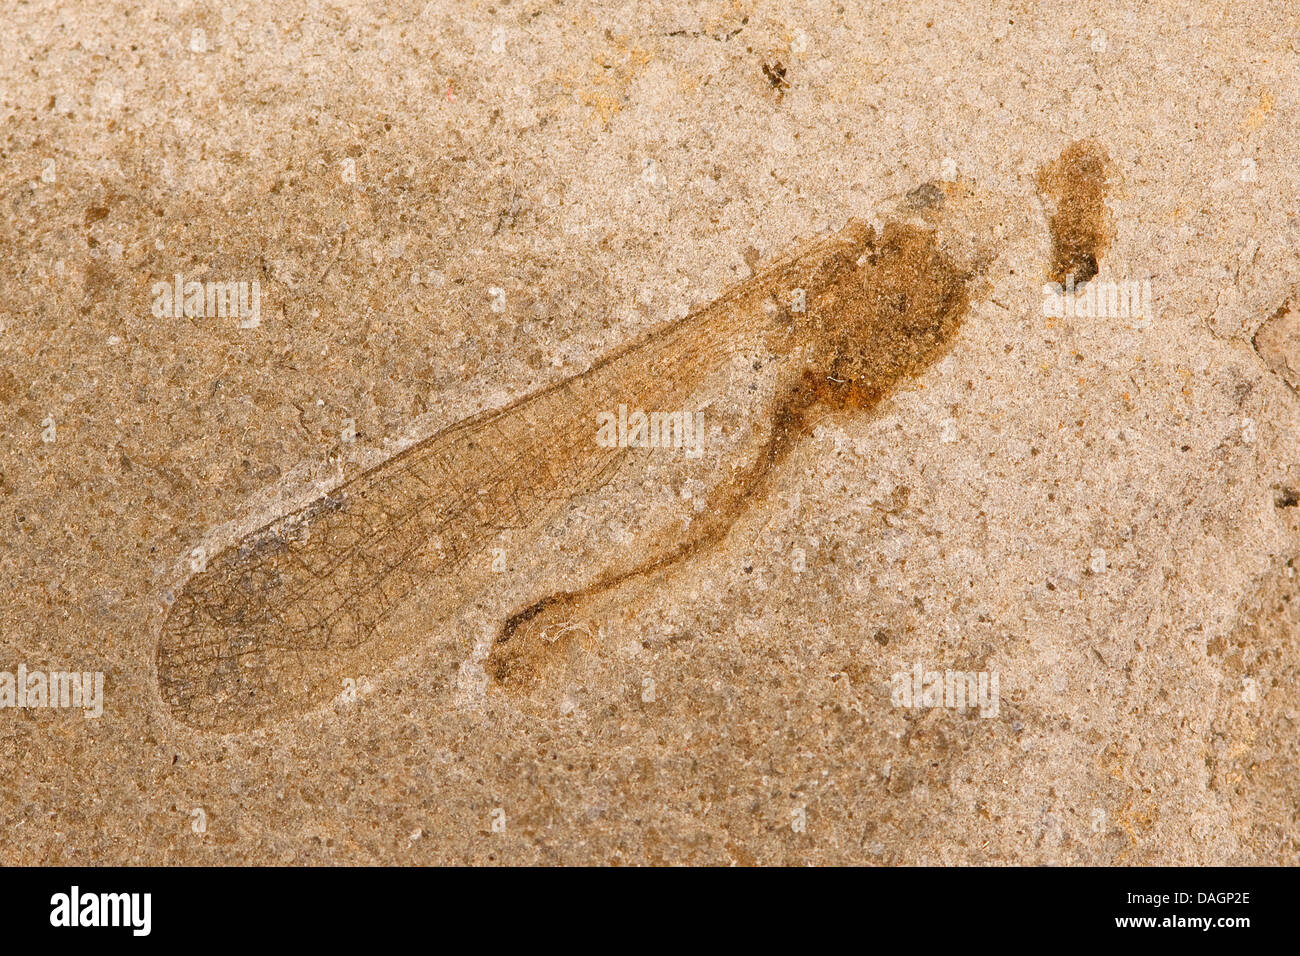 Saltamontes fosilizados de Fur, formación palaeocene/Eoceno, Dinamarca, Limfjord Foto de stock